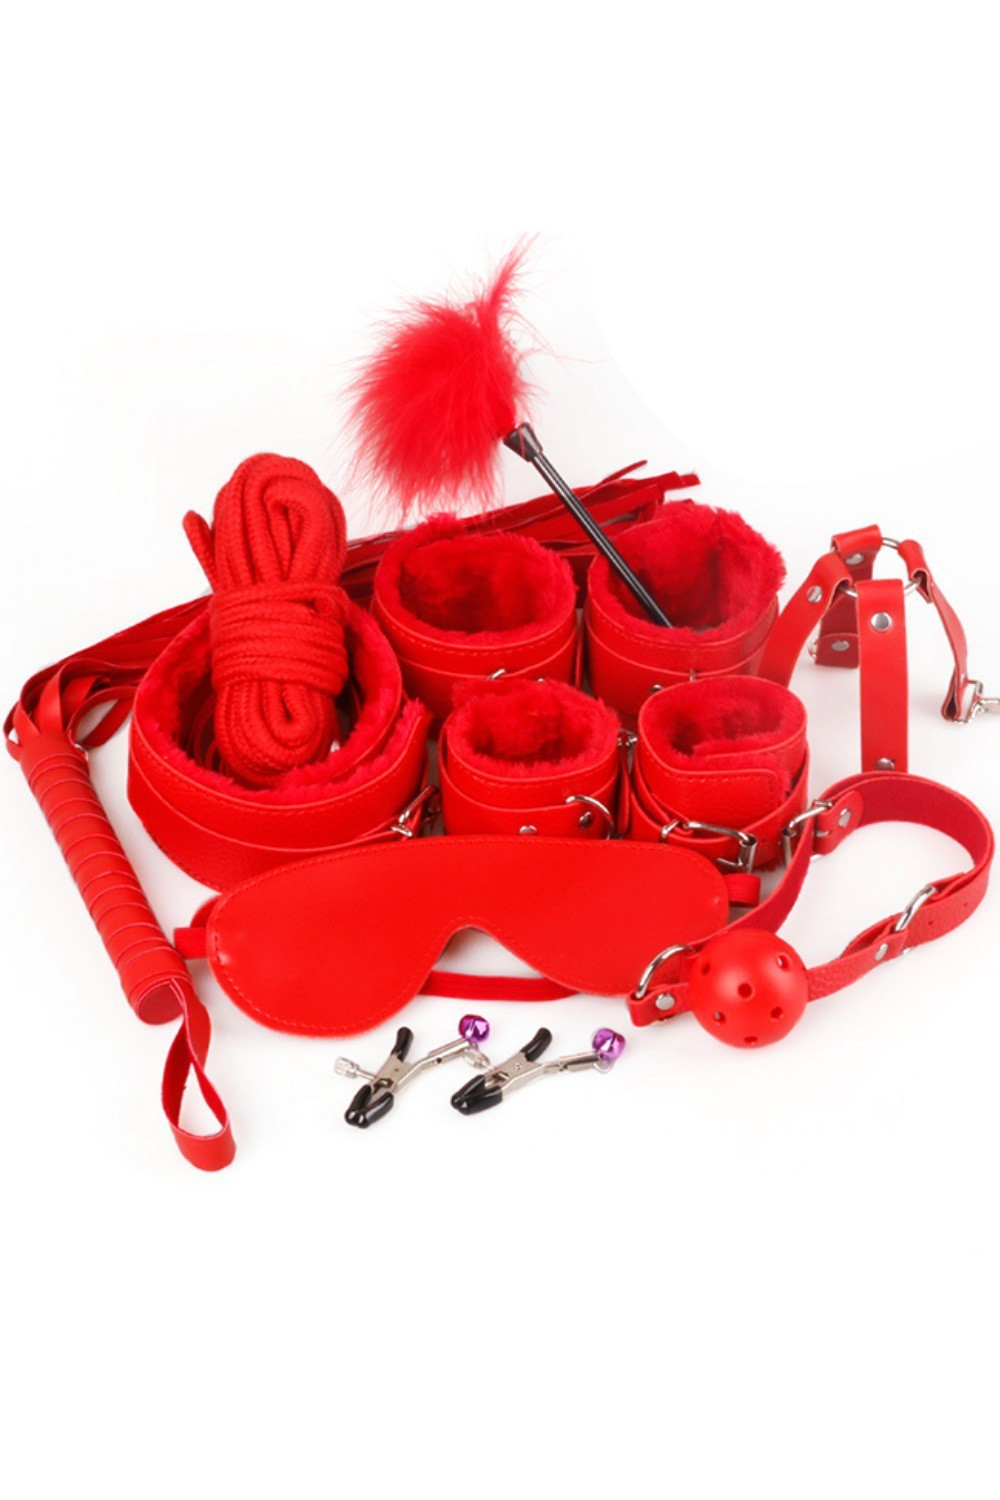 Kit bondage rouge - Jouets érotiques pour couples coquins